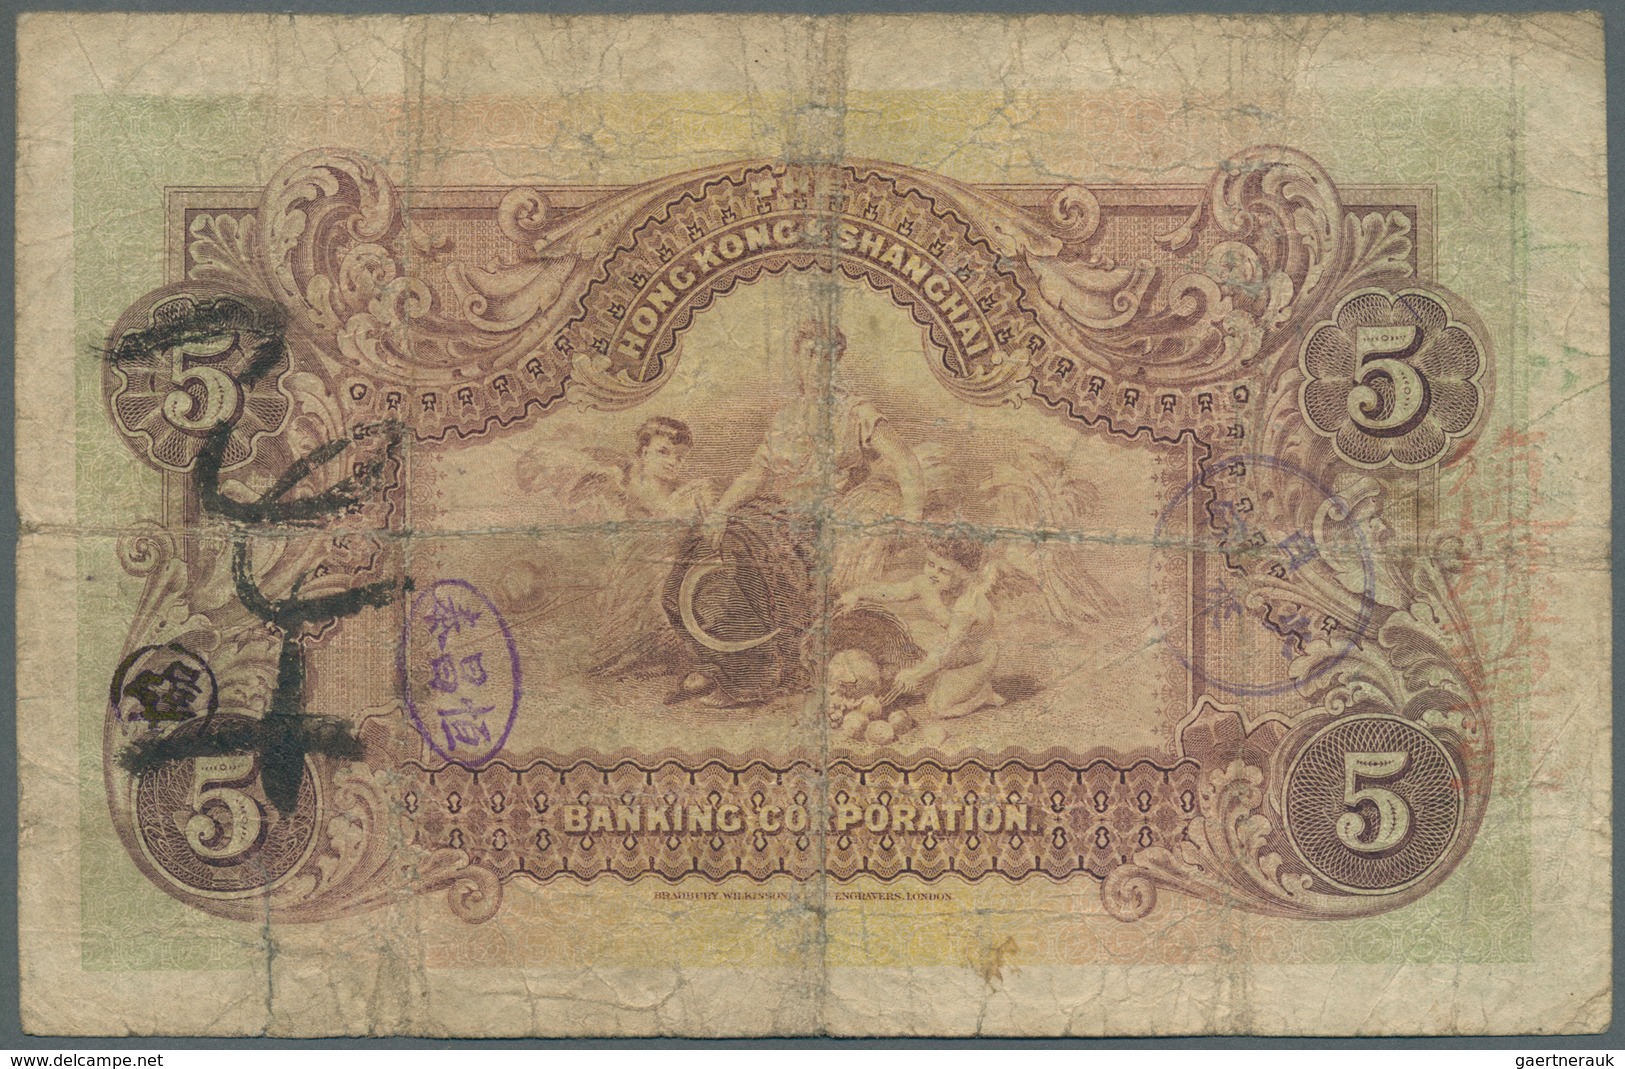 01685 Hong Kong: 5 Dollars 1923 Hong Kong & Shanghai Banking Corporation P. S353, Used With Folds And Crea - Hongkong